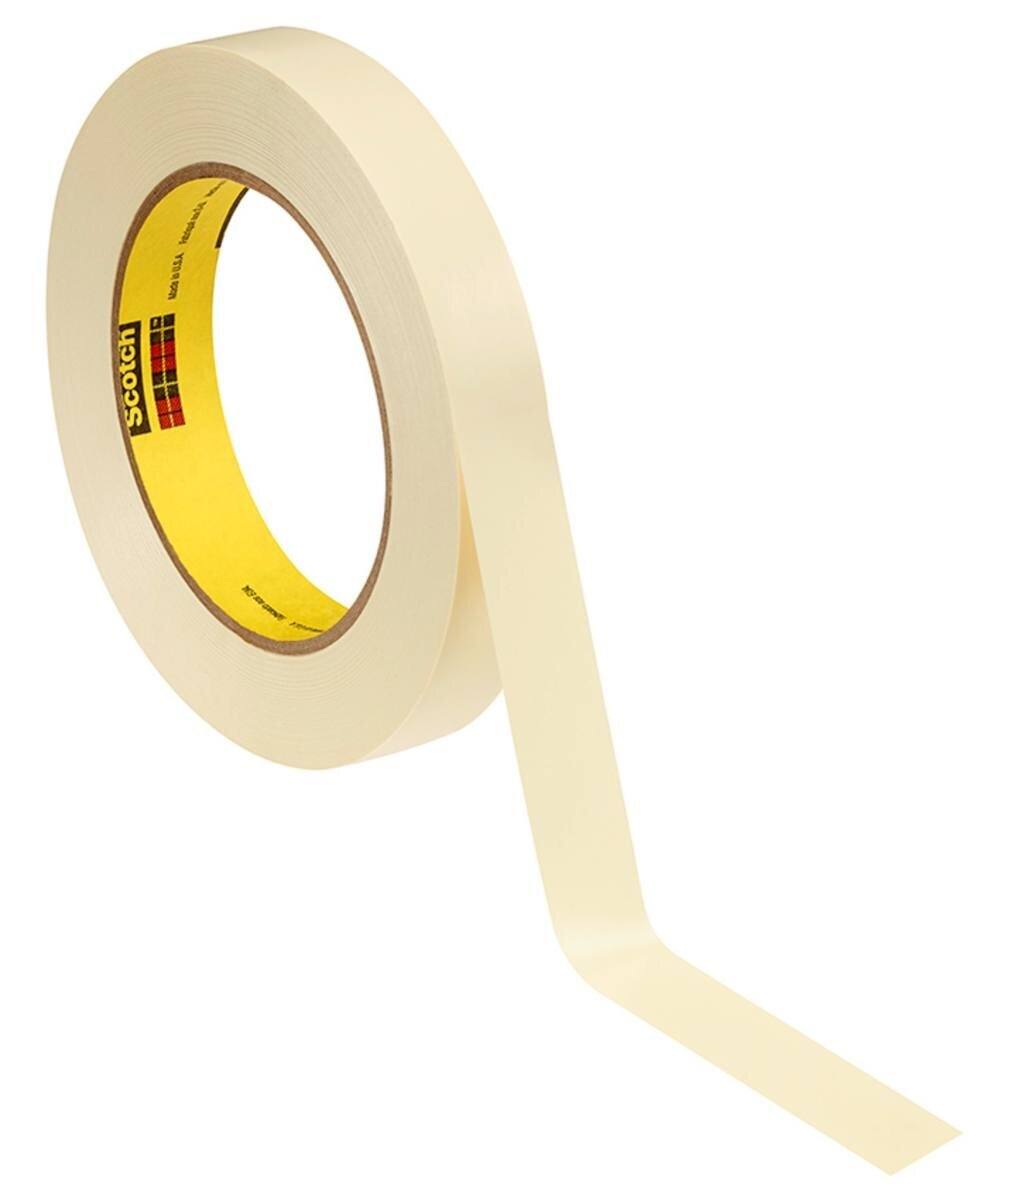 3M Galvanikklebeband Weich-PVC 470, gelb, 50 mm x 33 m, 0,18 mm